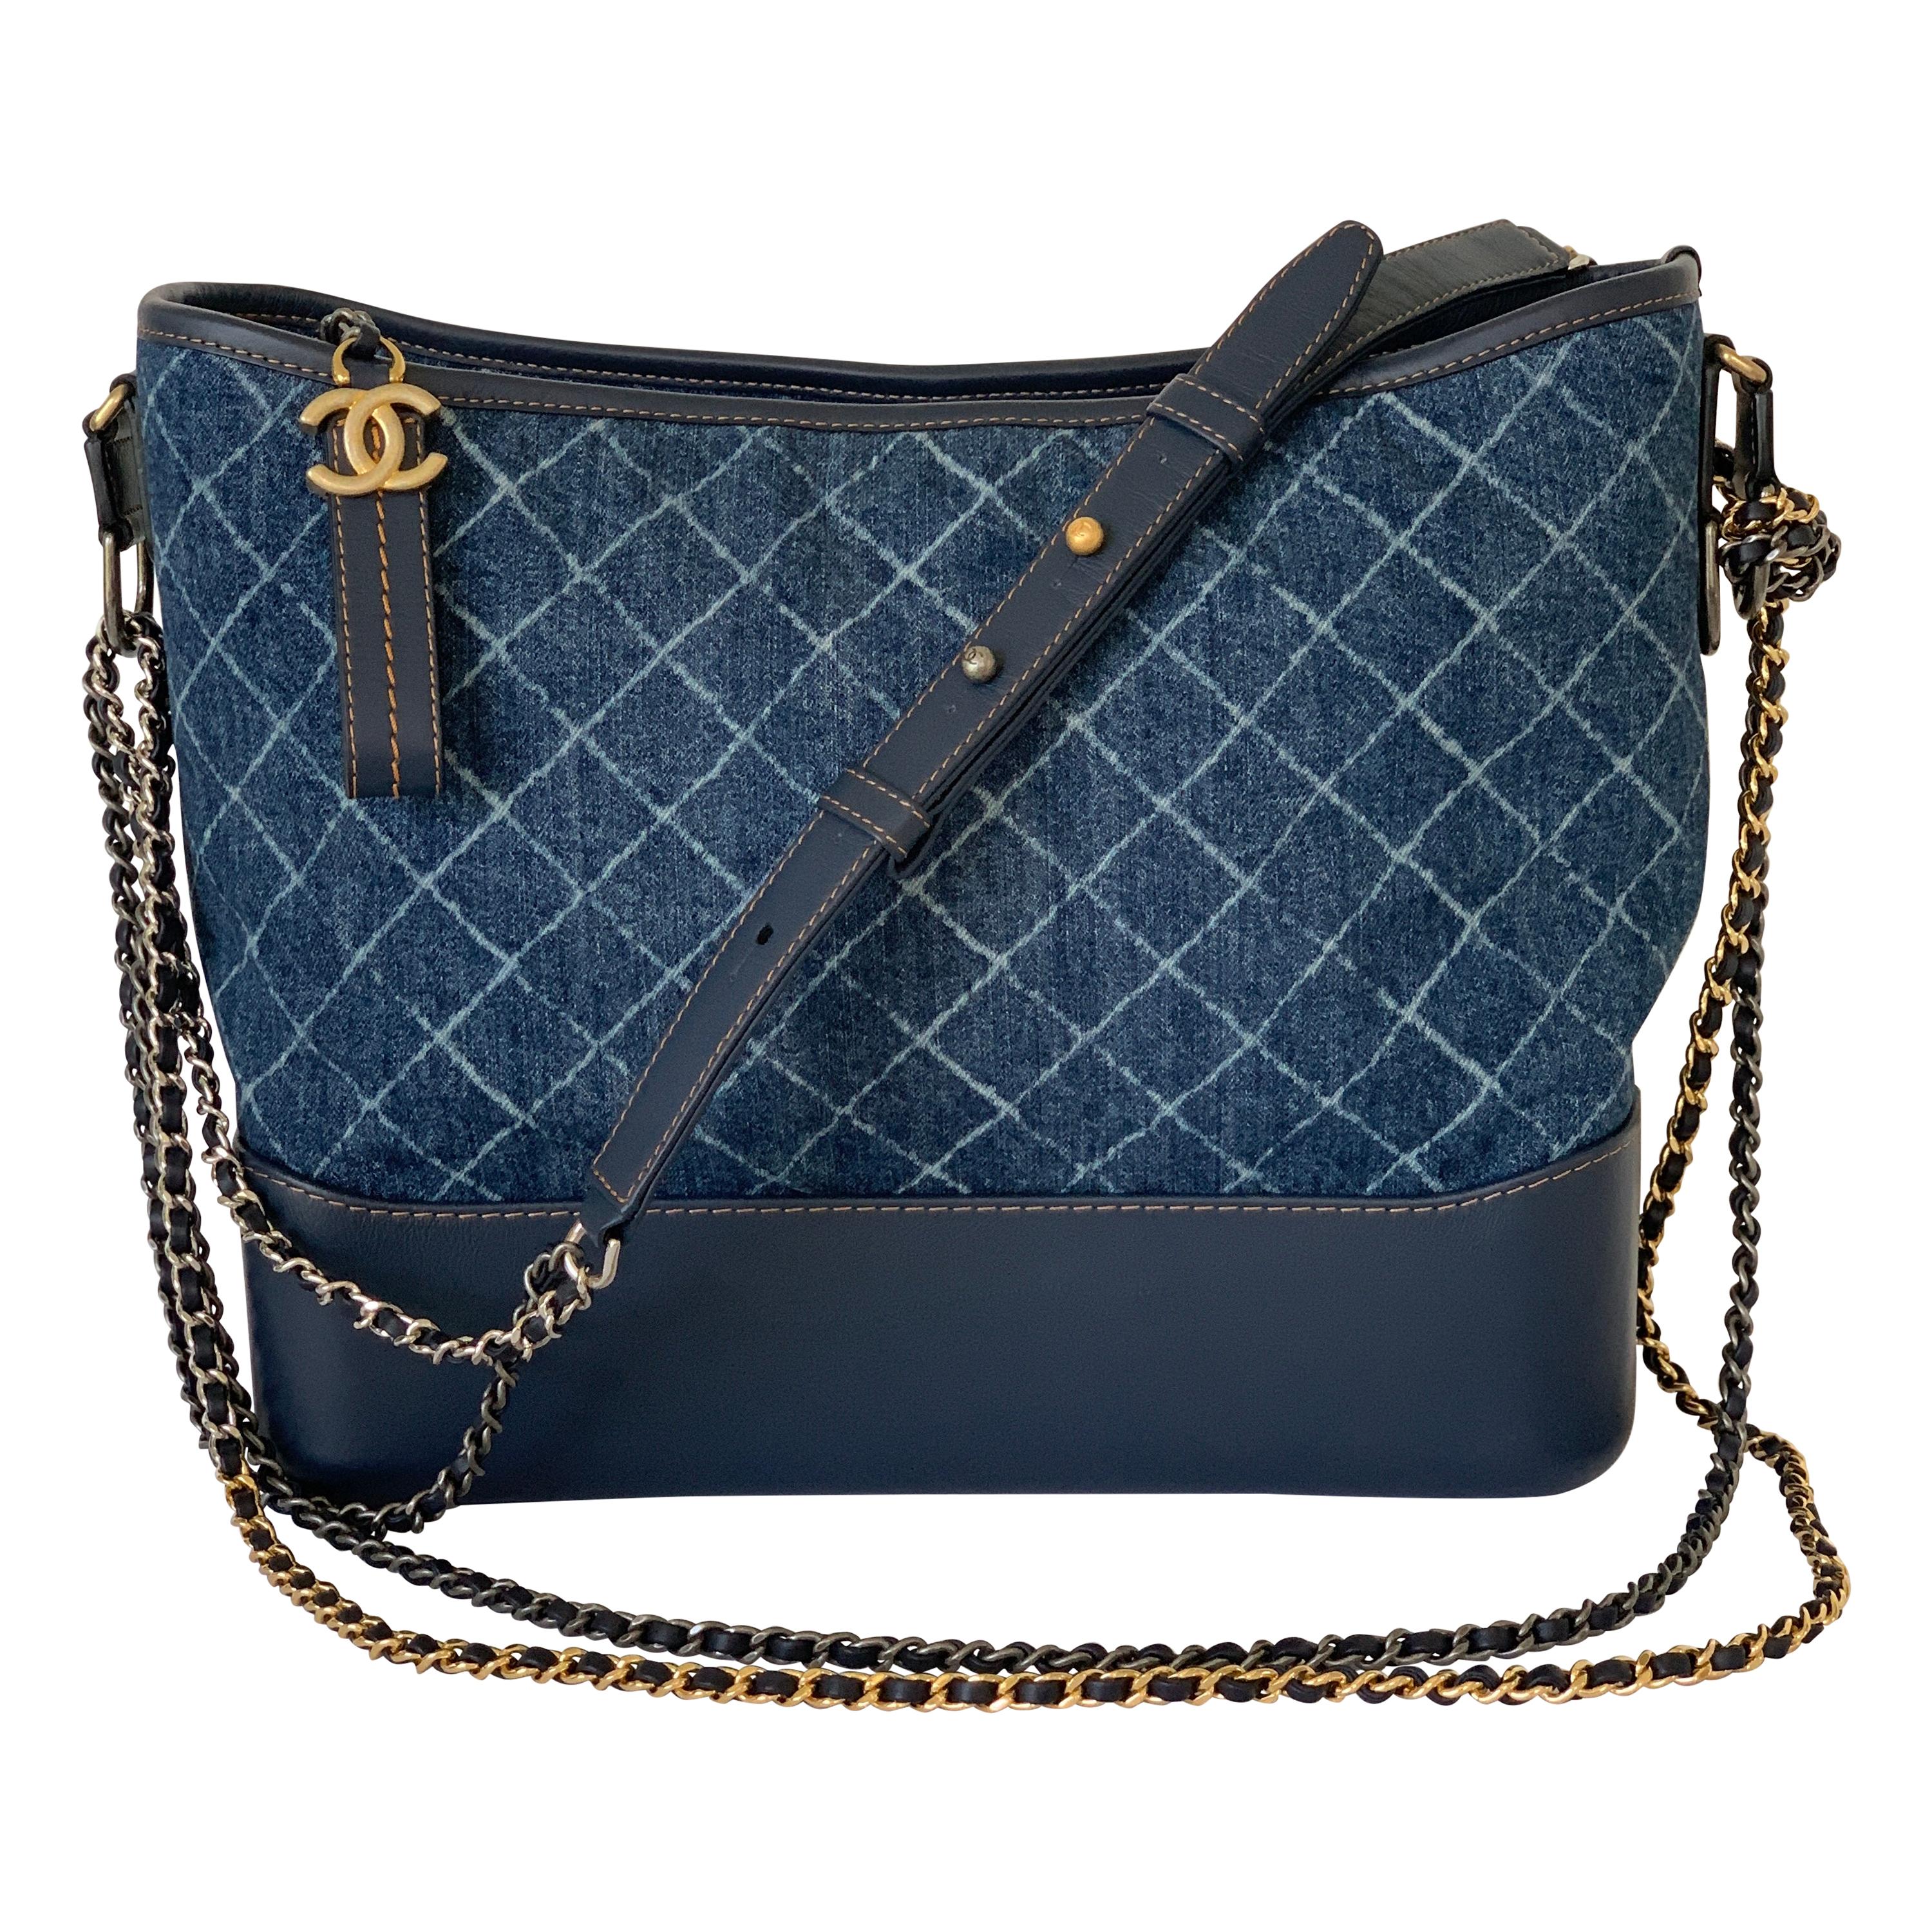 Chanel Small Gabrielle Hobo Bag Denim Blue Multicolour Hardware